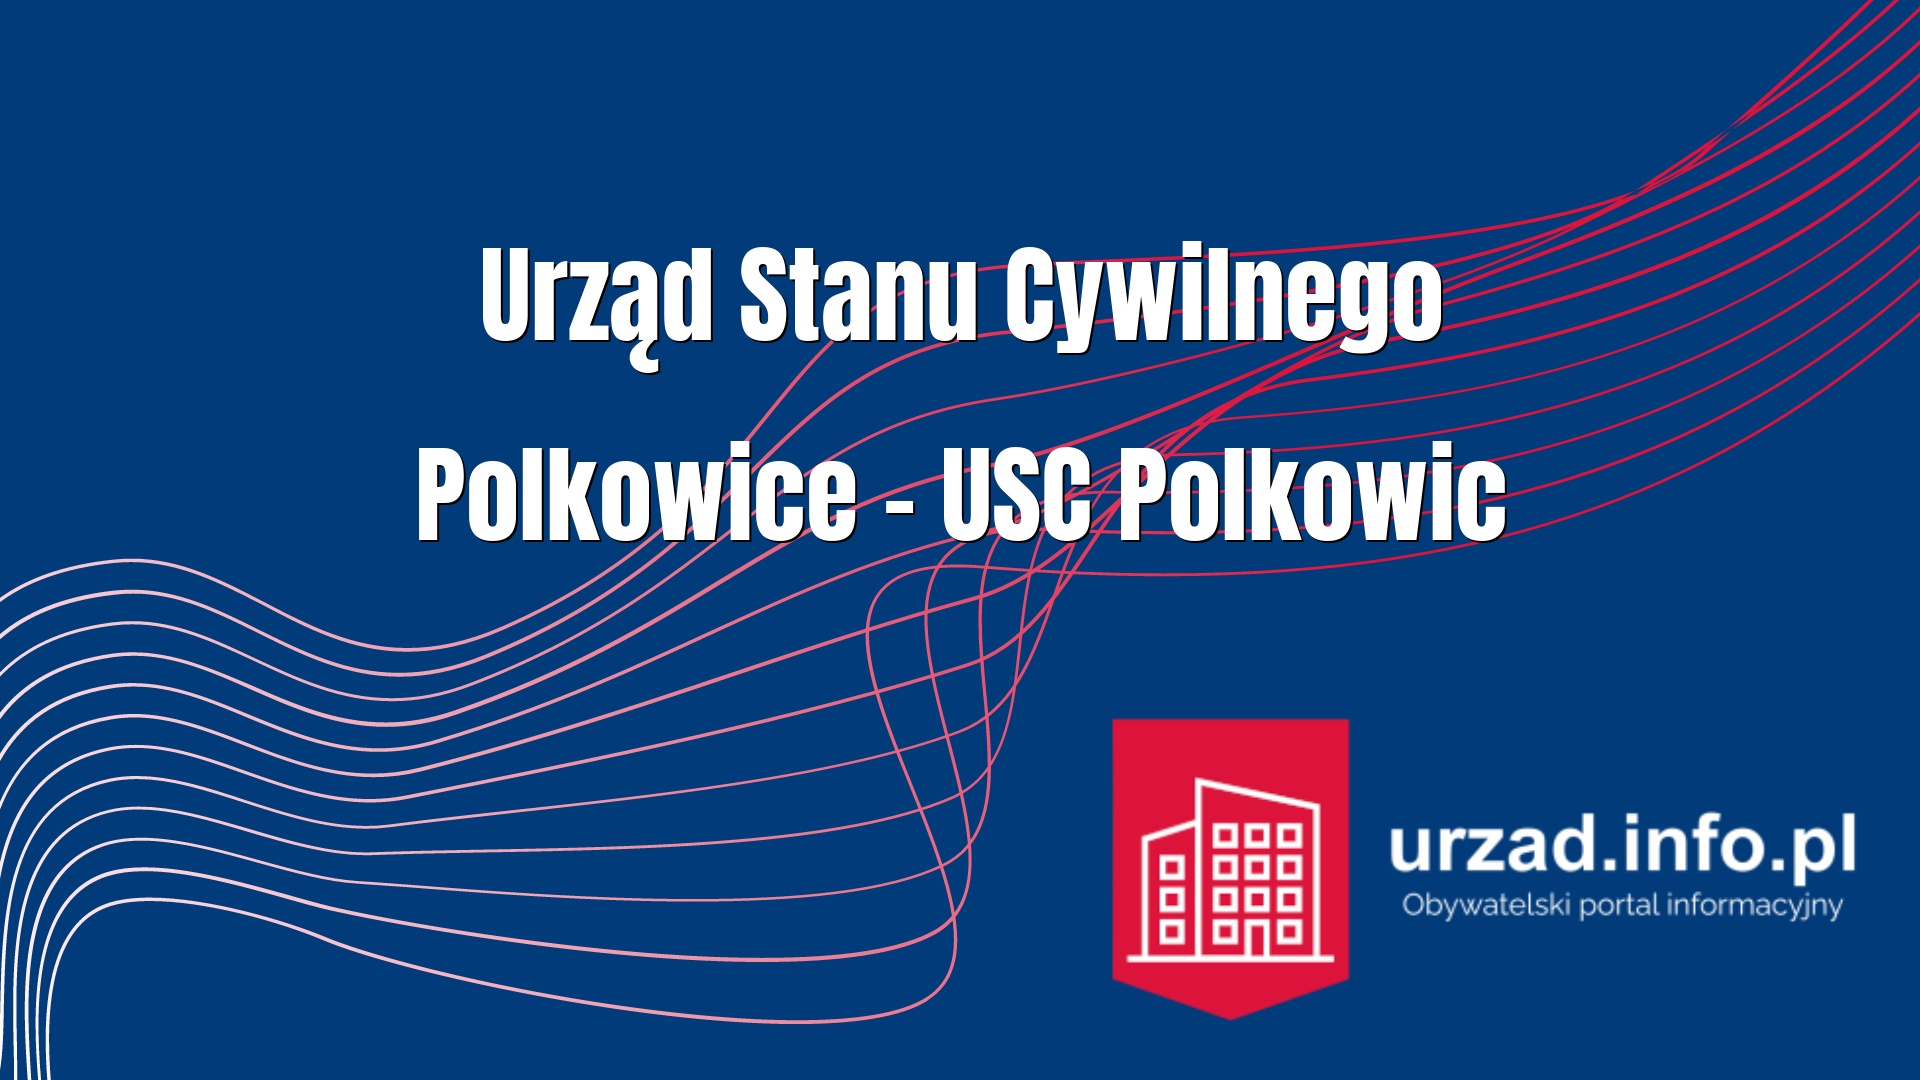 Urząd Stanu Cywilnego Polkowice – USC Polkowic